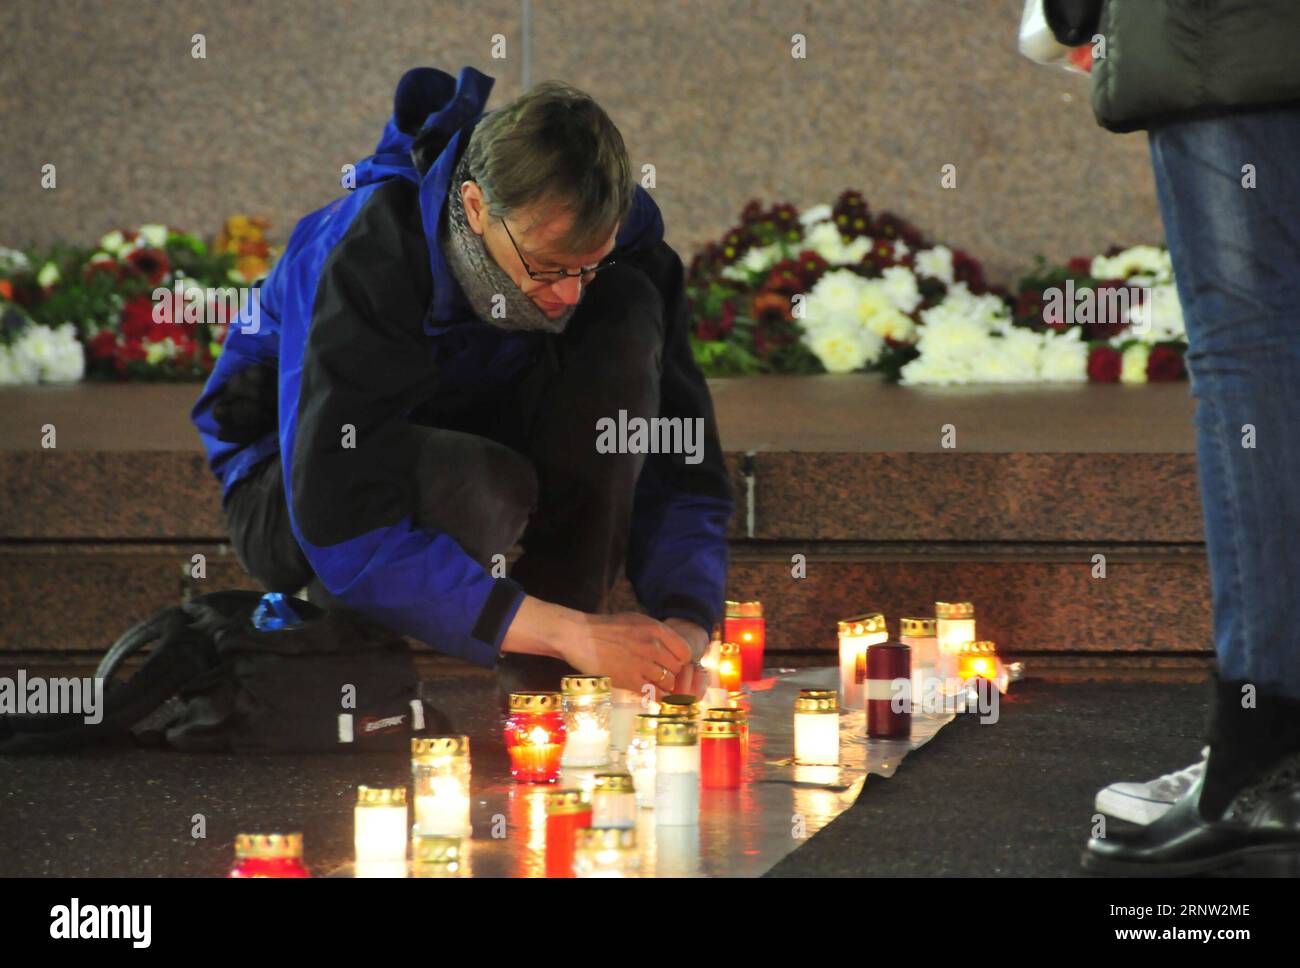 (171130) -- RIGA, 30 novembre 2017 -- Un uomo accende una candela di fronte al Monumento alla libertà durante un evento commemorativo a riga, capitale della Lettonia, il 30 novembre 2017. Giovedì si sono svolti diversi eventi per ricordare la peggiore tragedia dell'Olocausto in Lettonia: L'uccisione di 25.000 ebrei in soli due giorni nell'inverno del 1941 in una foresta fuori riga. LETTONIA-RIGA-OLOCAUSTO-COMMEMORAZIONE Janis PUBLICATIONxNOTxINxCHN Foto Stock